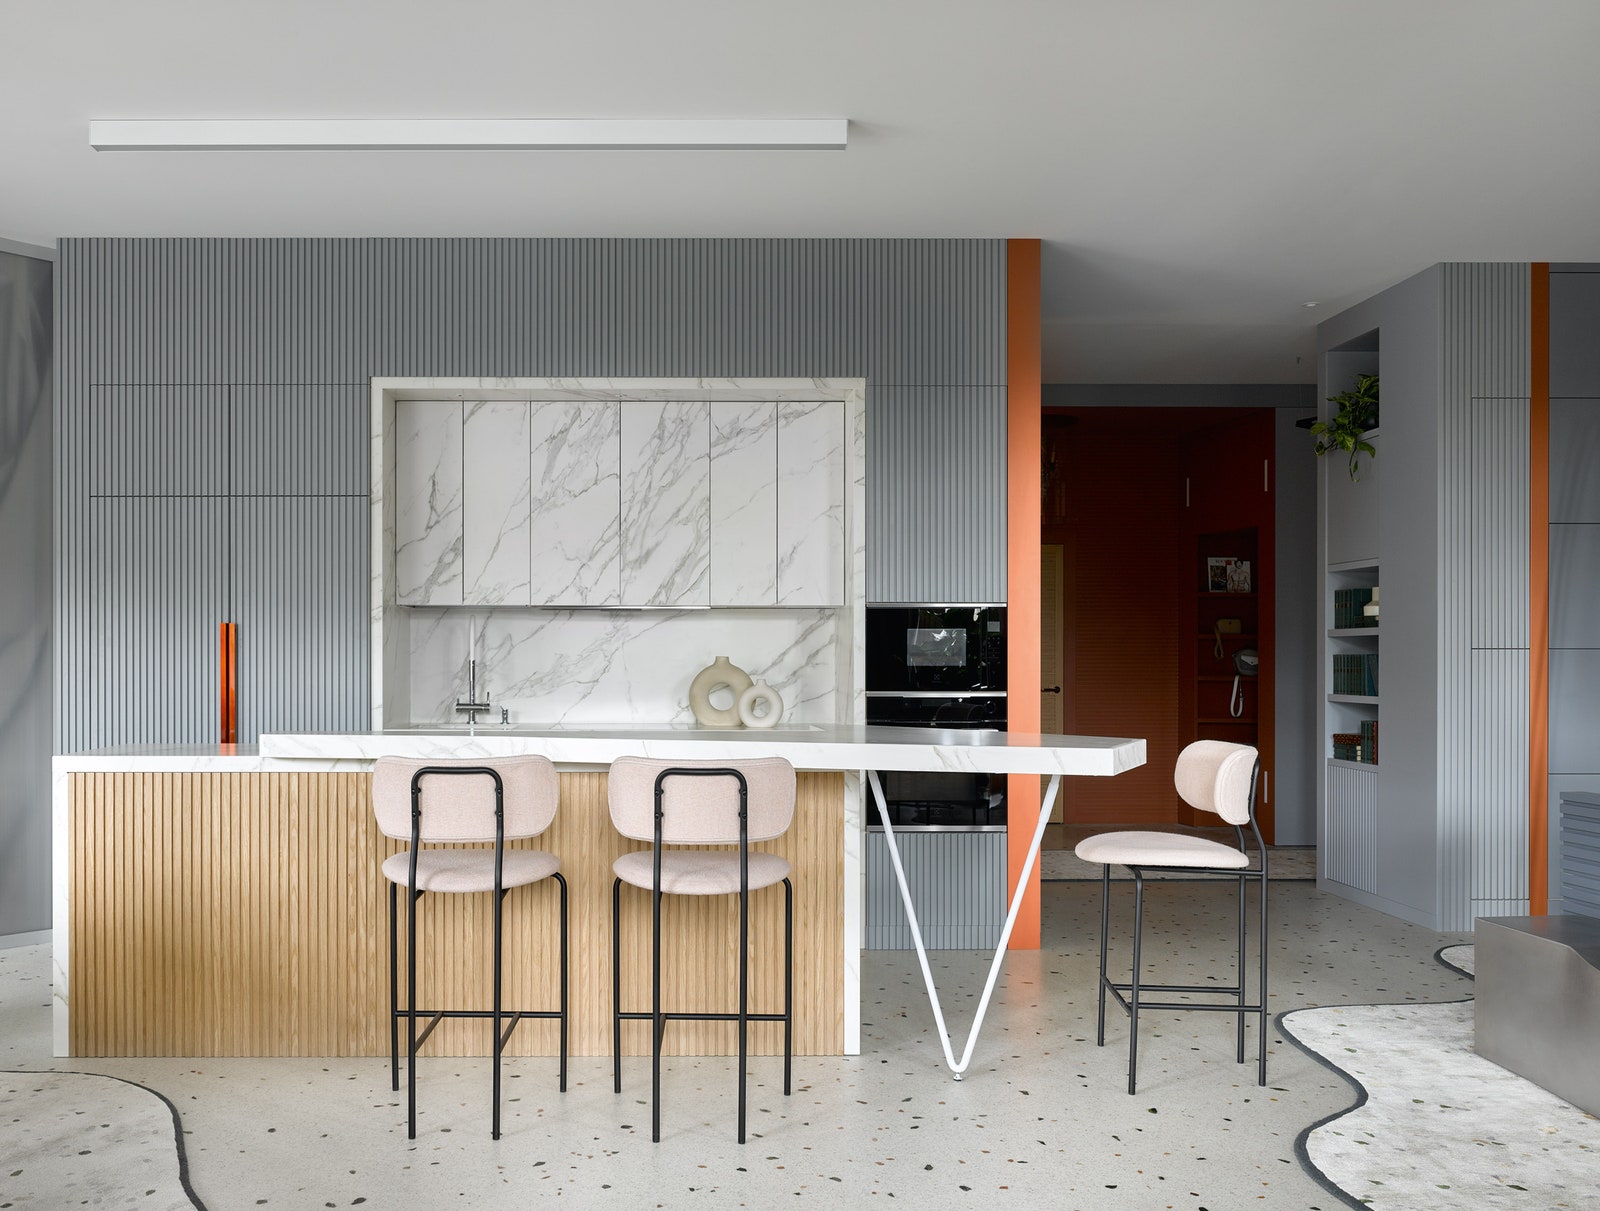 Кухня. Гарнитур с фасадами из керамики Häcker встроенные шкафы из массива дуба Planeta Design барные стулья Menu.